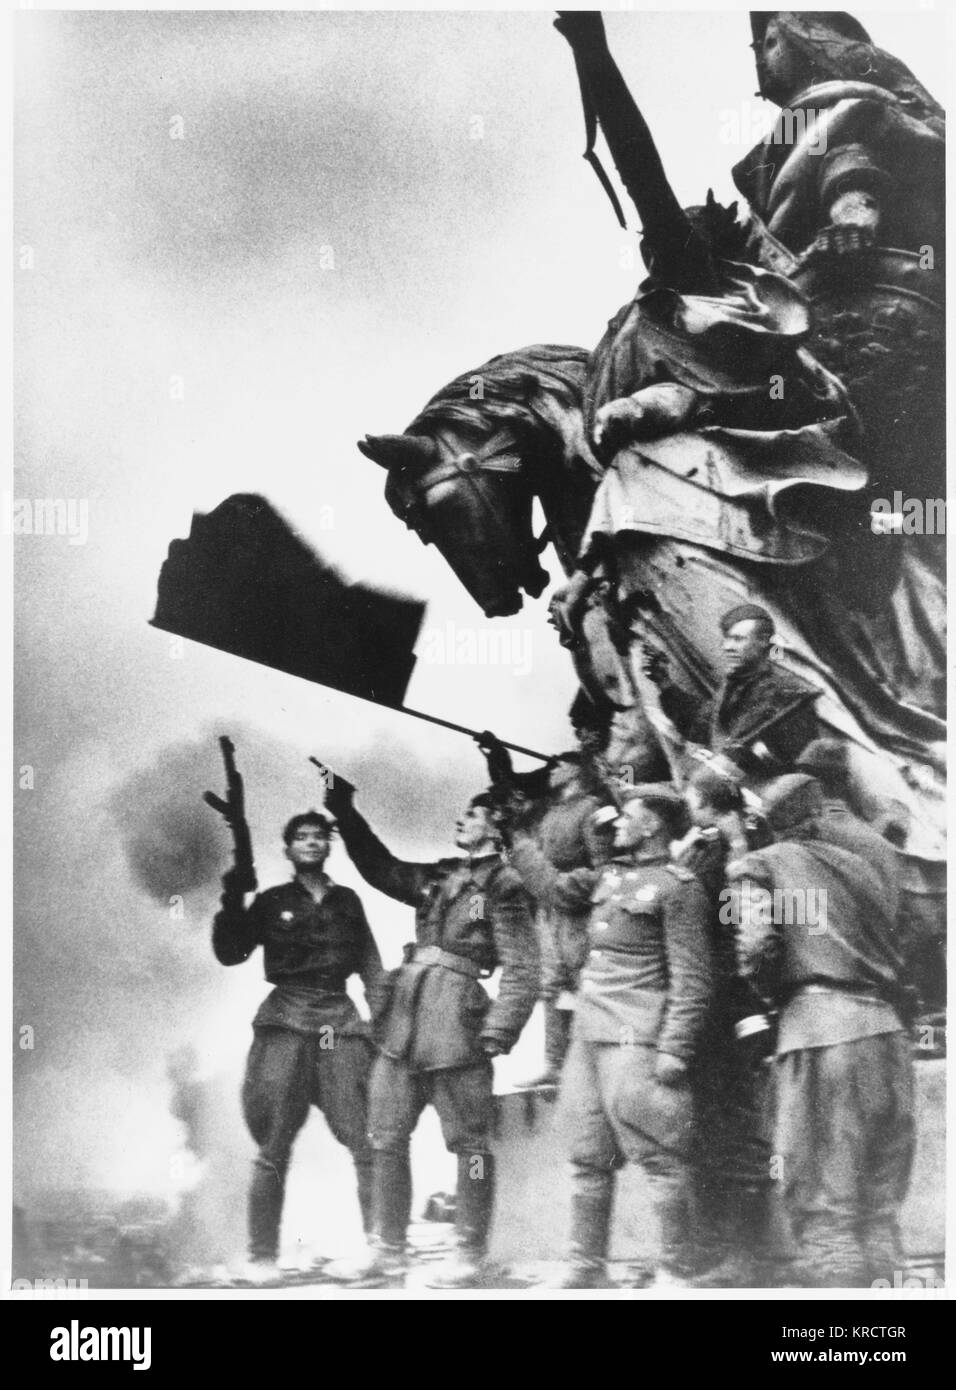 Soldati russi del maresciallo Zhukov l esercito di piantare la bandiera rossa sul Reichstag di Berlino - il giorno seguente la Germania sarà formalmente capitulate Data: 1 maggio 1945 Foto Stock